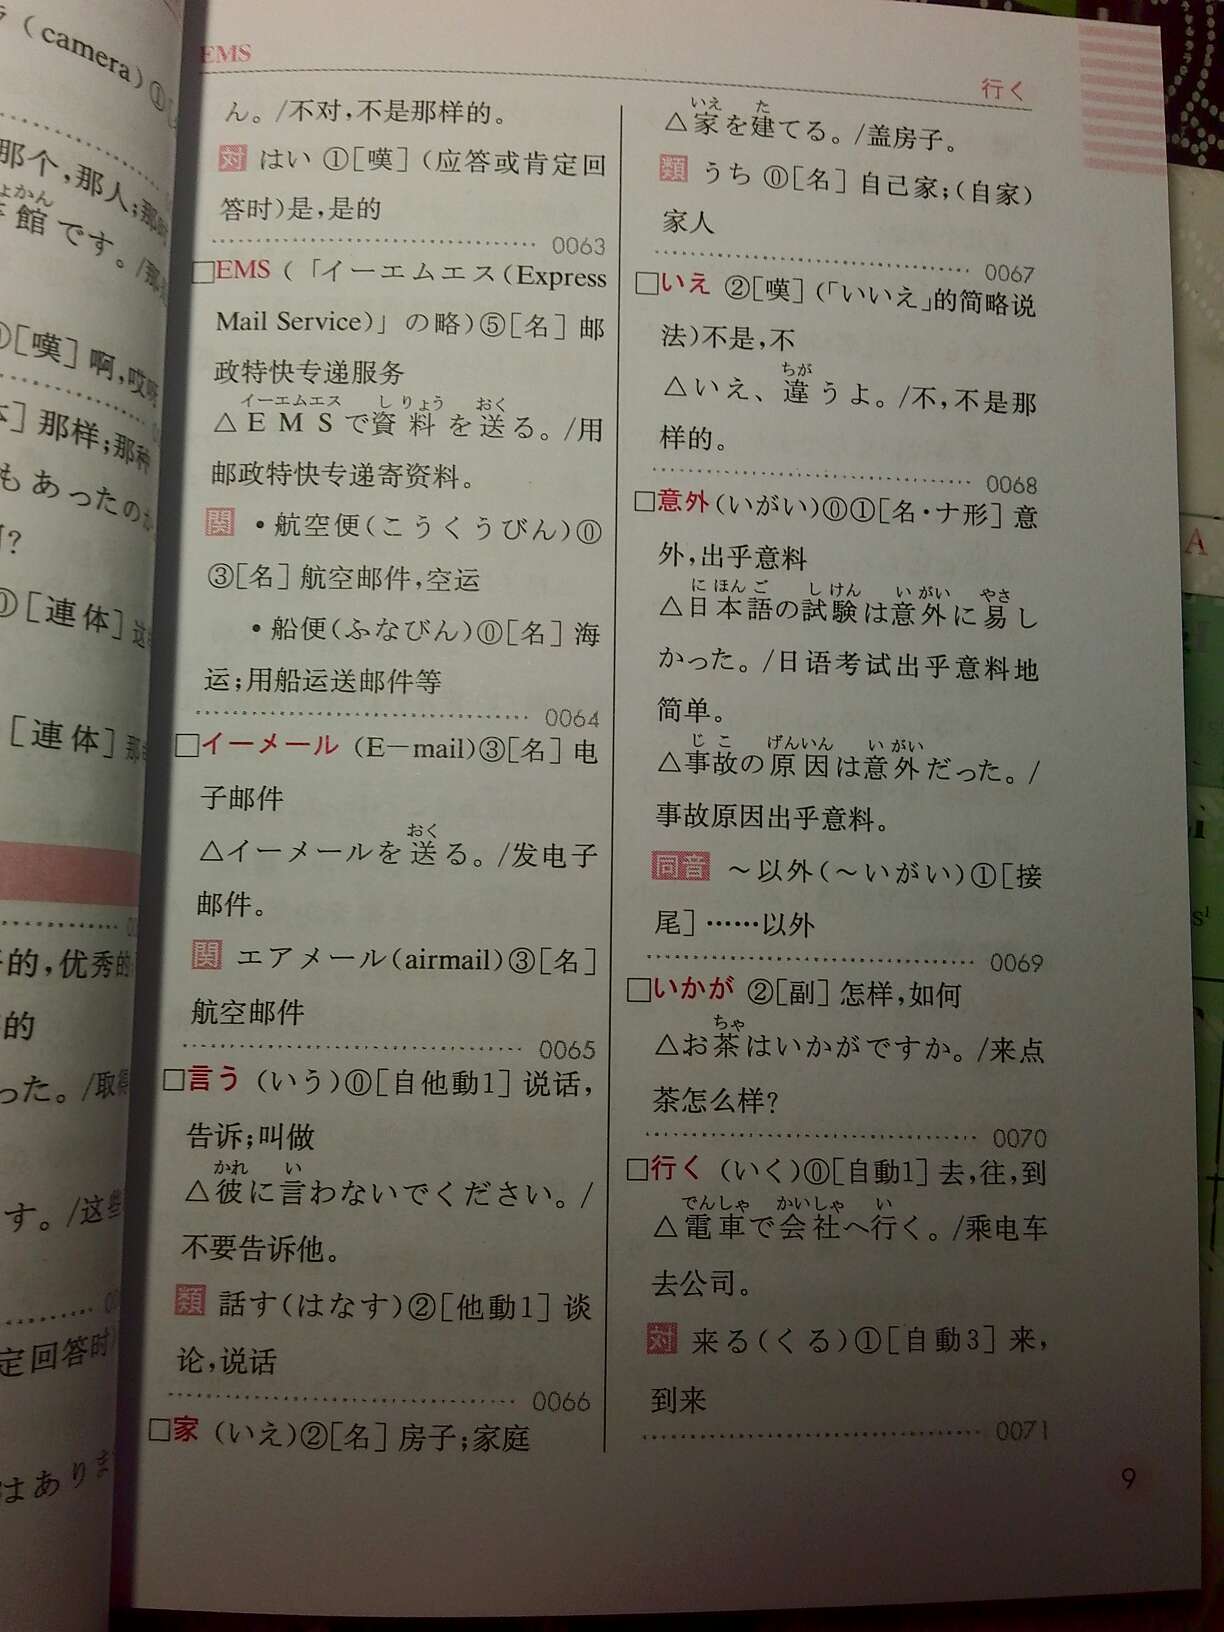 一本非常好的日语初级单词书。